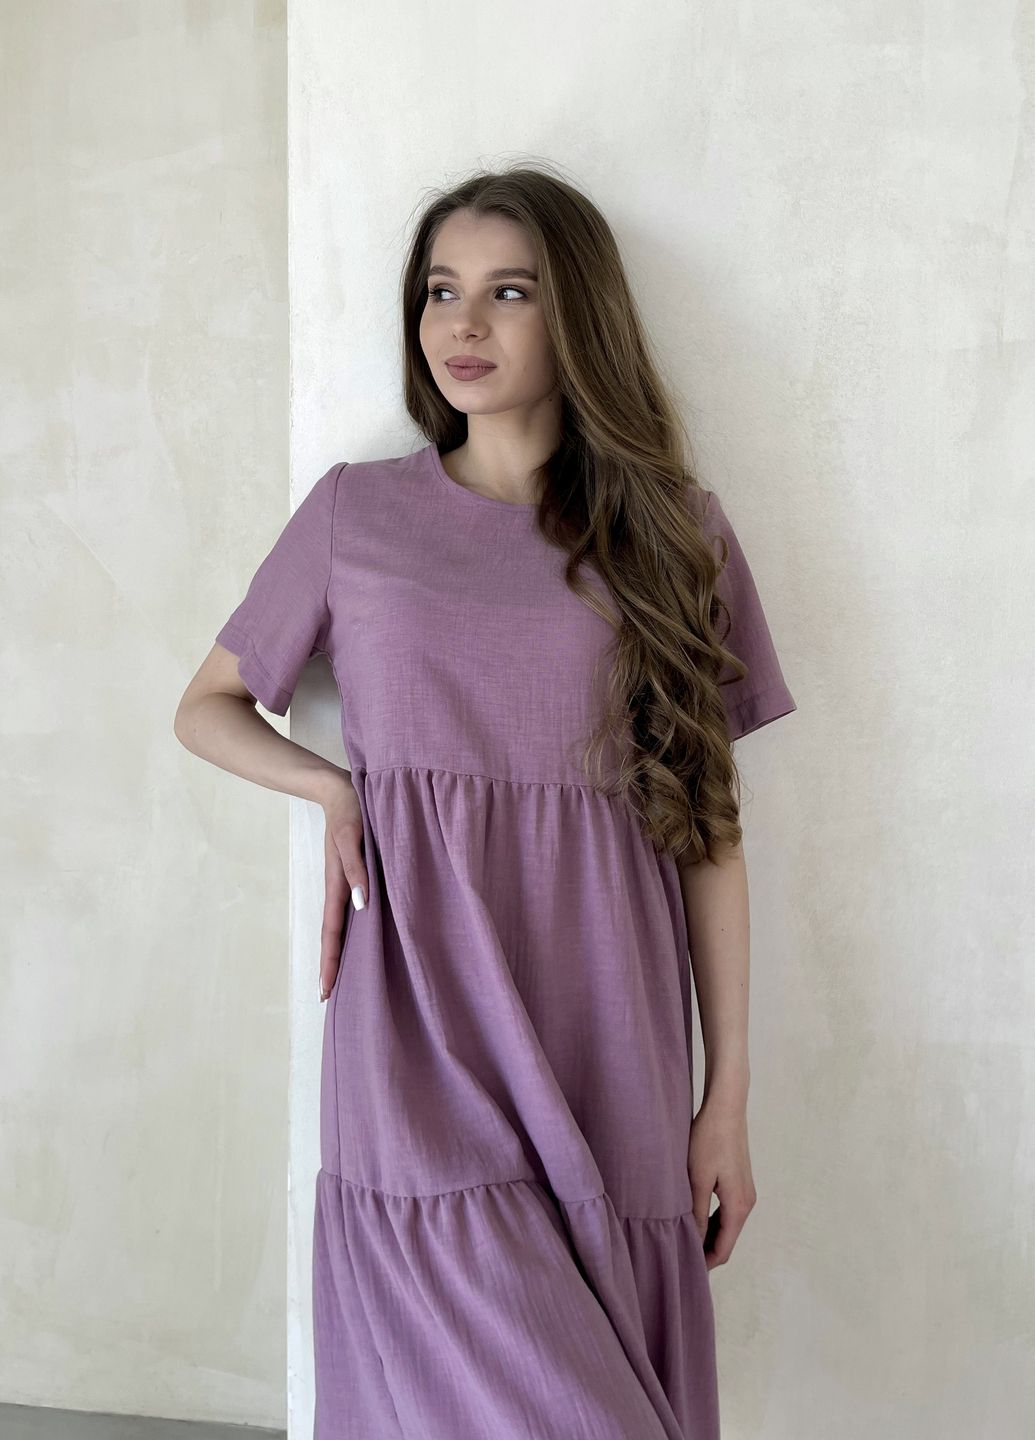 Купить Женское платье до колена однотонное с коротким рукавом из льна розовое Merlini Сесто 700000162, размер 50-52 (2XL-3XL) в интернет-магазине